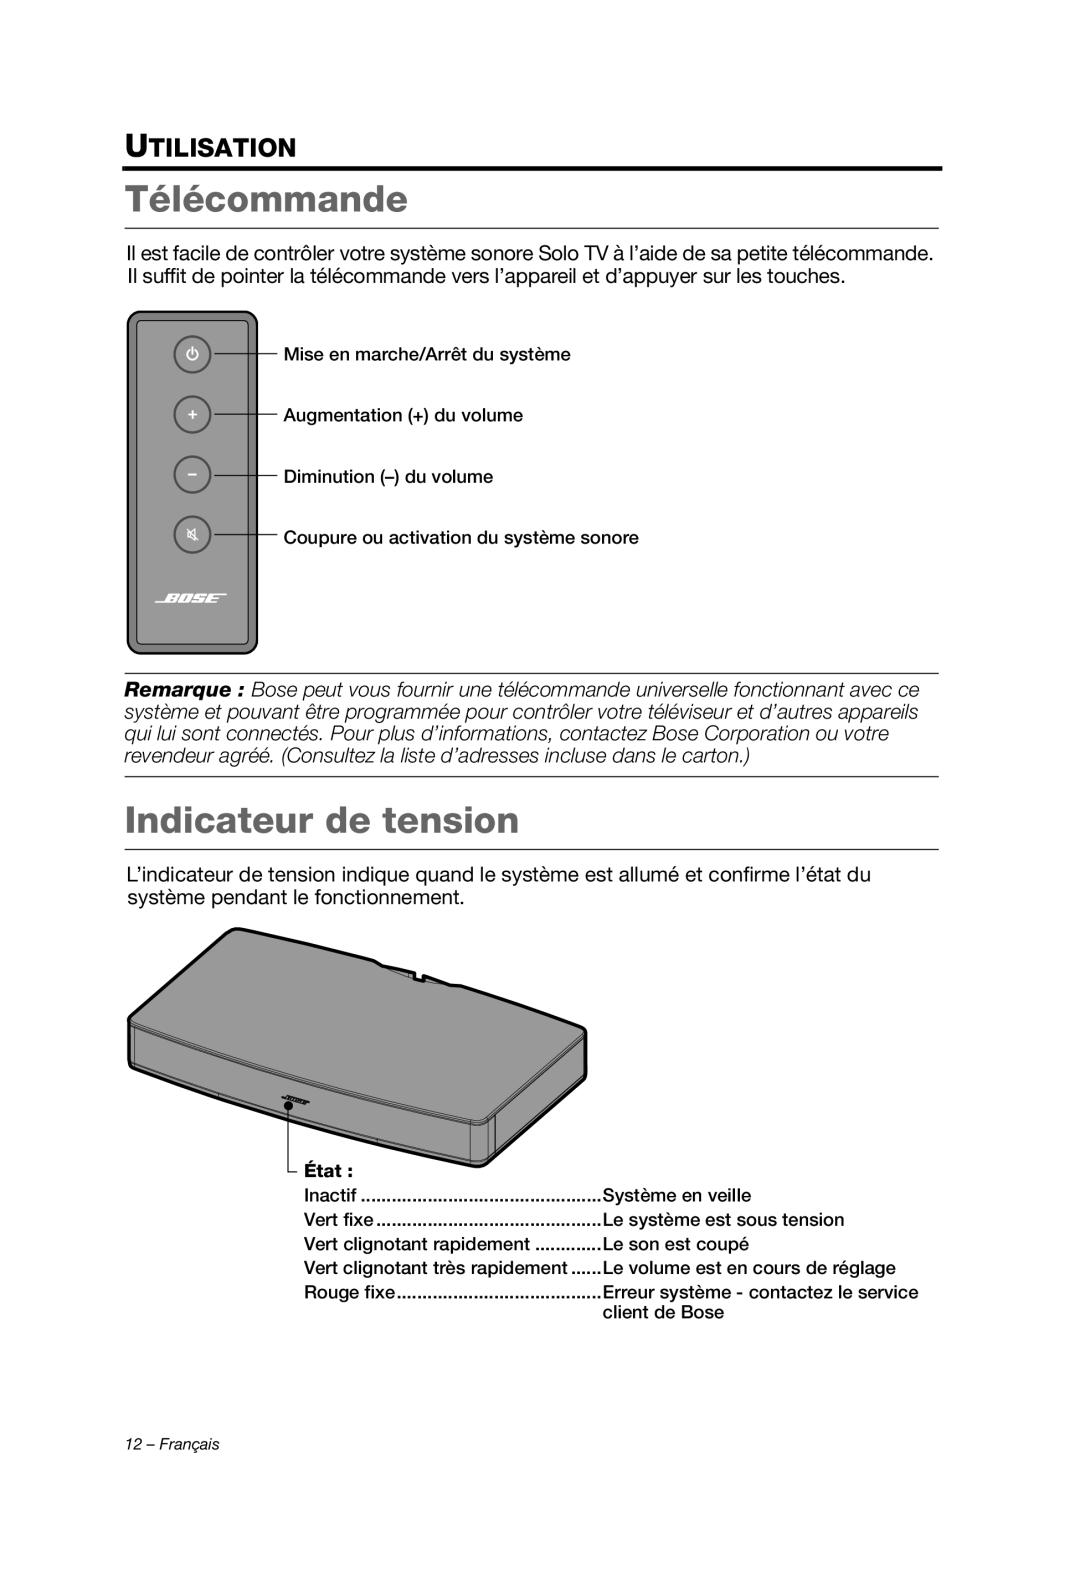 Bose AM353759 manual Télécommande, Indicateur de tension, Utilisation, État 